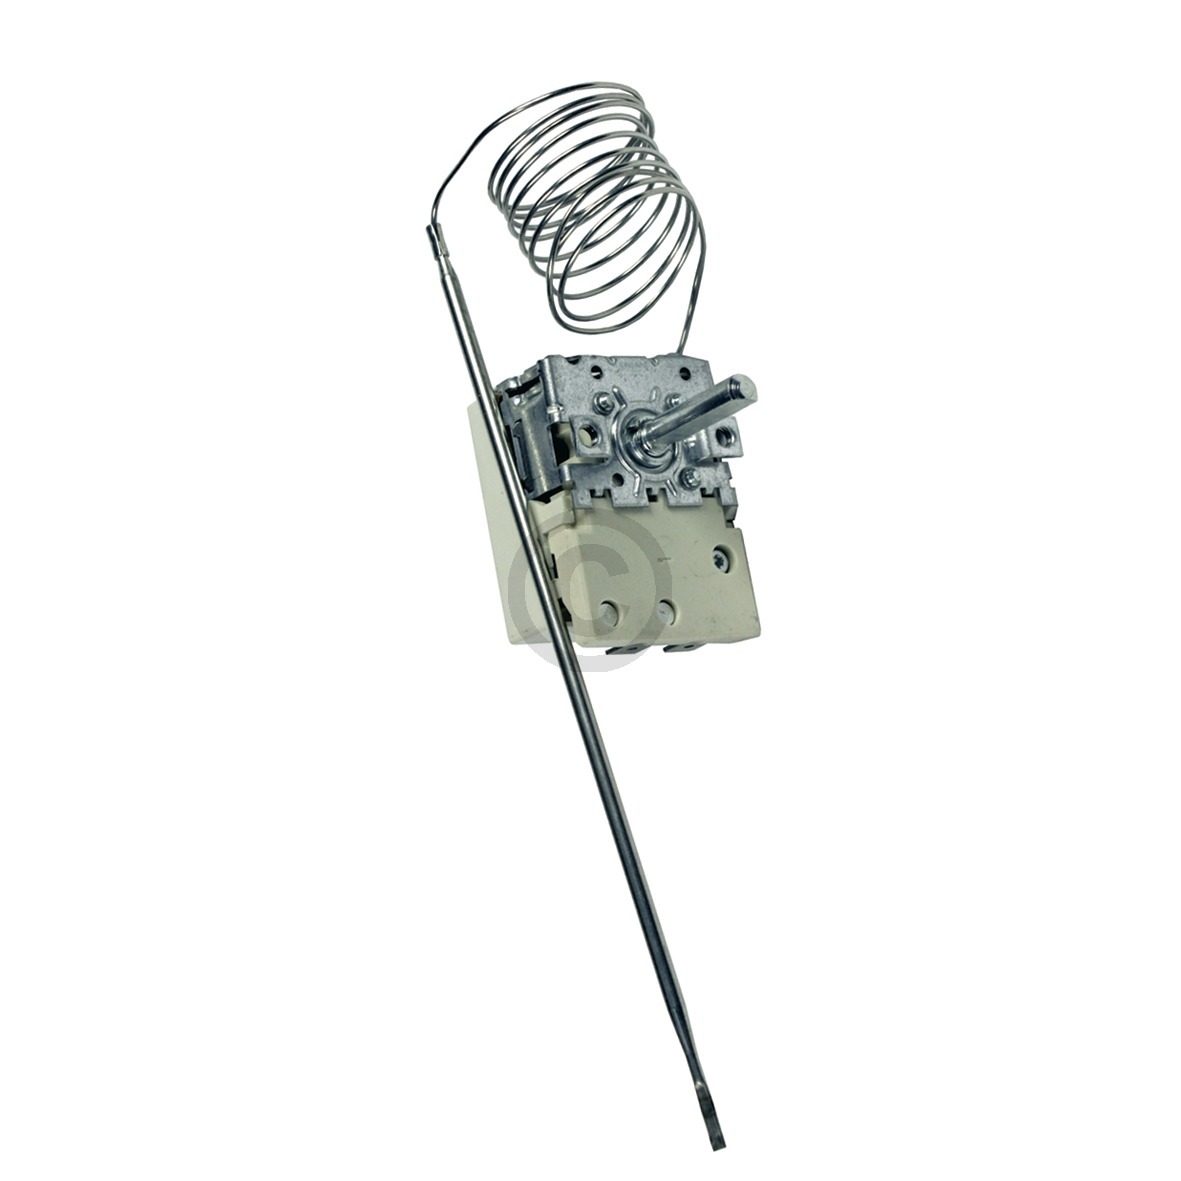 Thermostat EGO 55.18062.050 50-320°C für Backofen